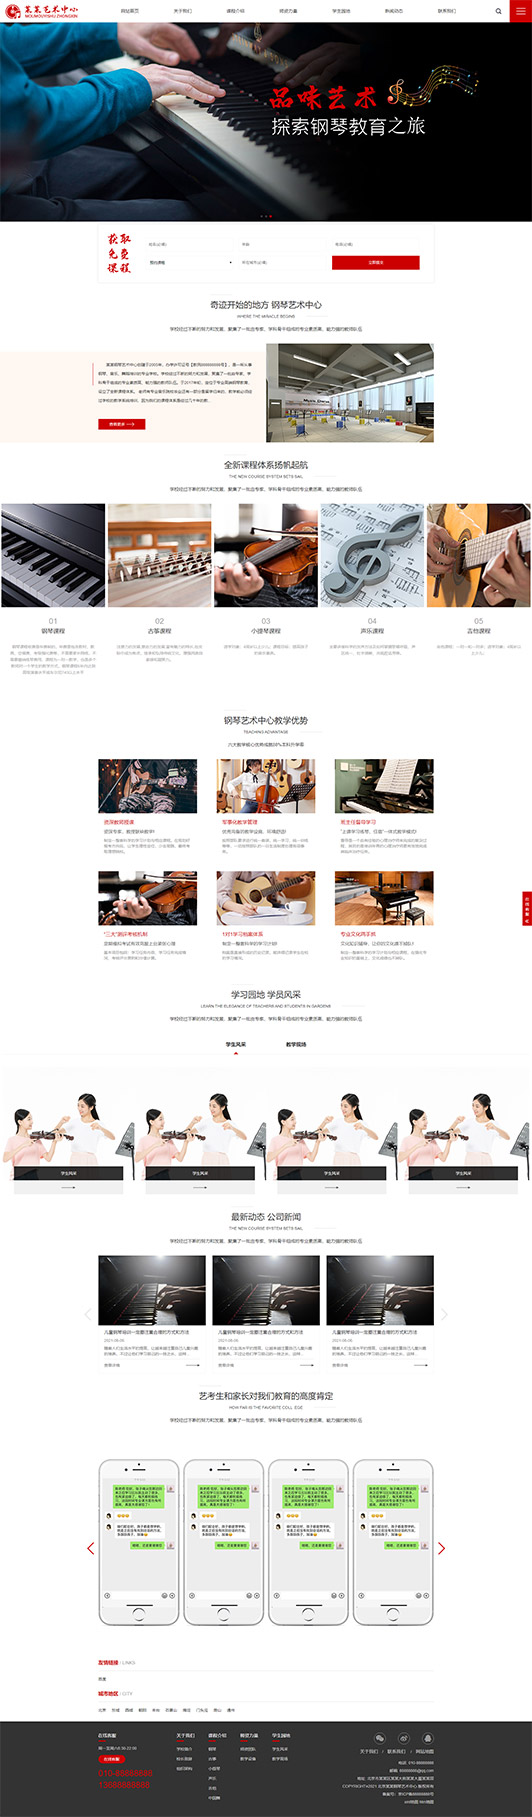 湘潭钢琴艺术培训公司响应式企业网站